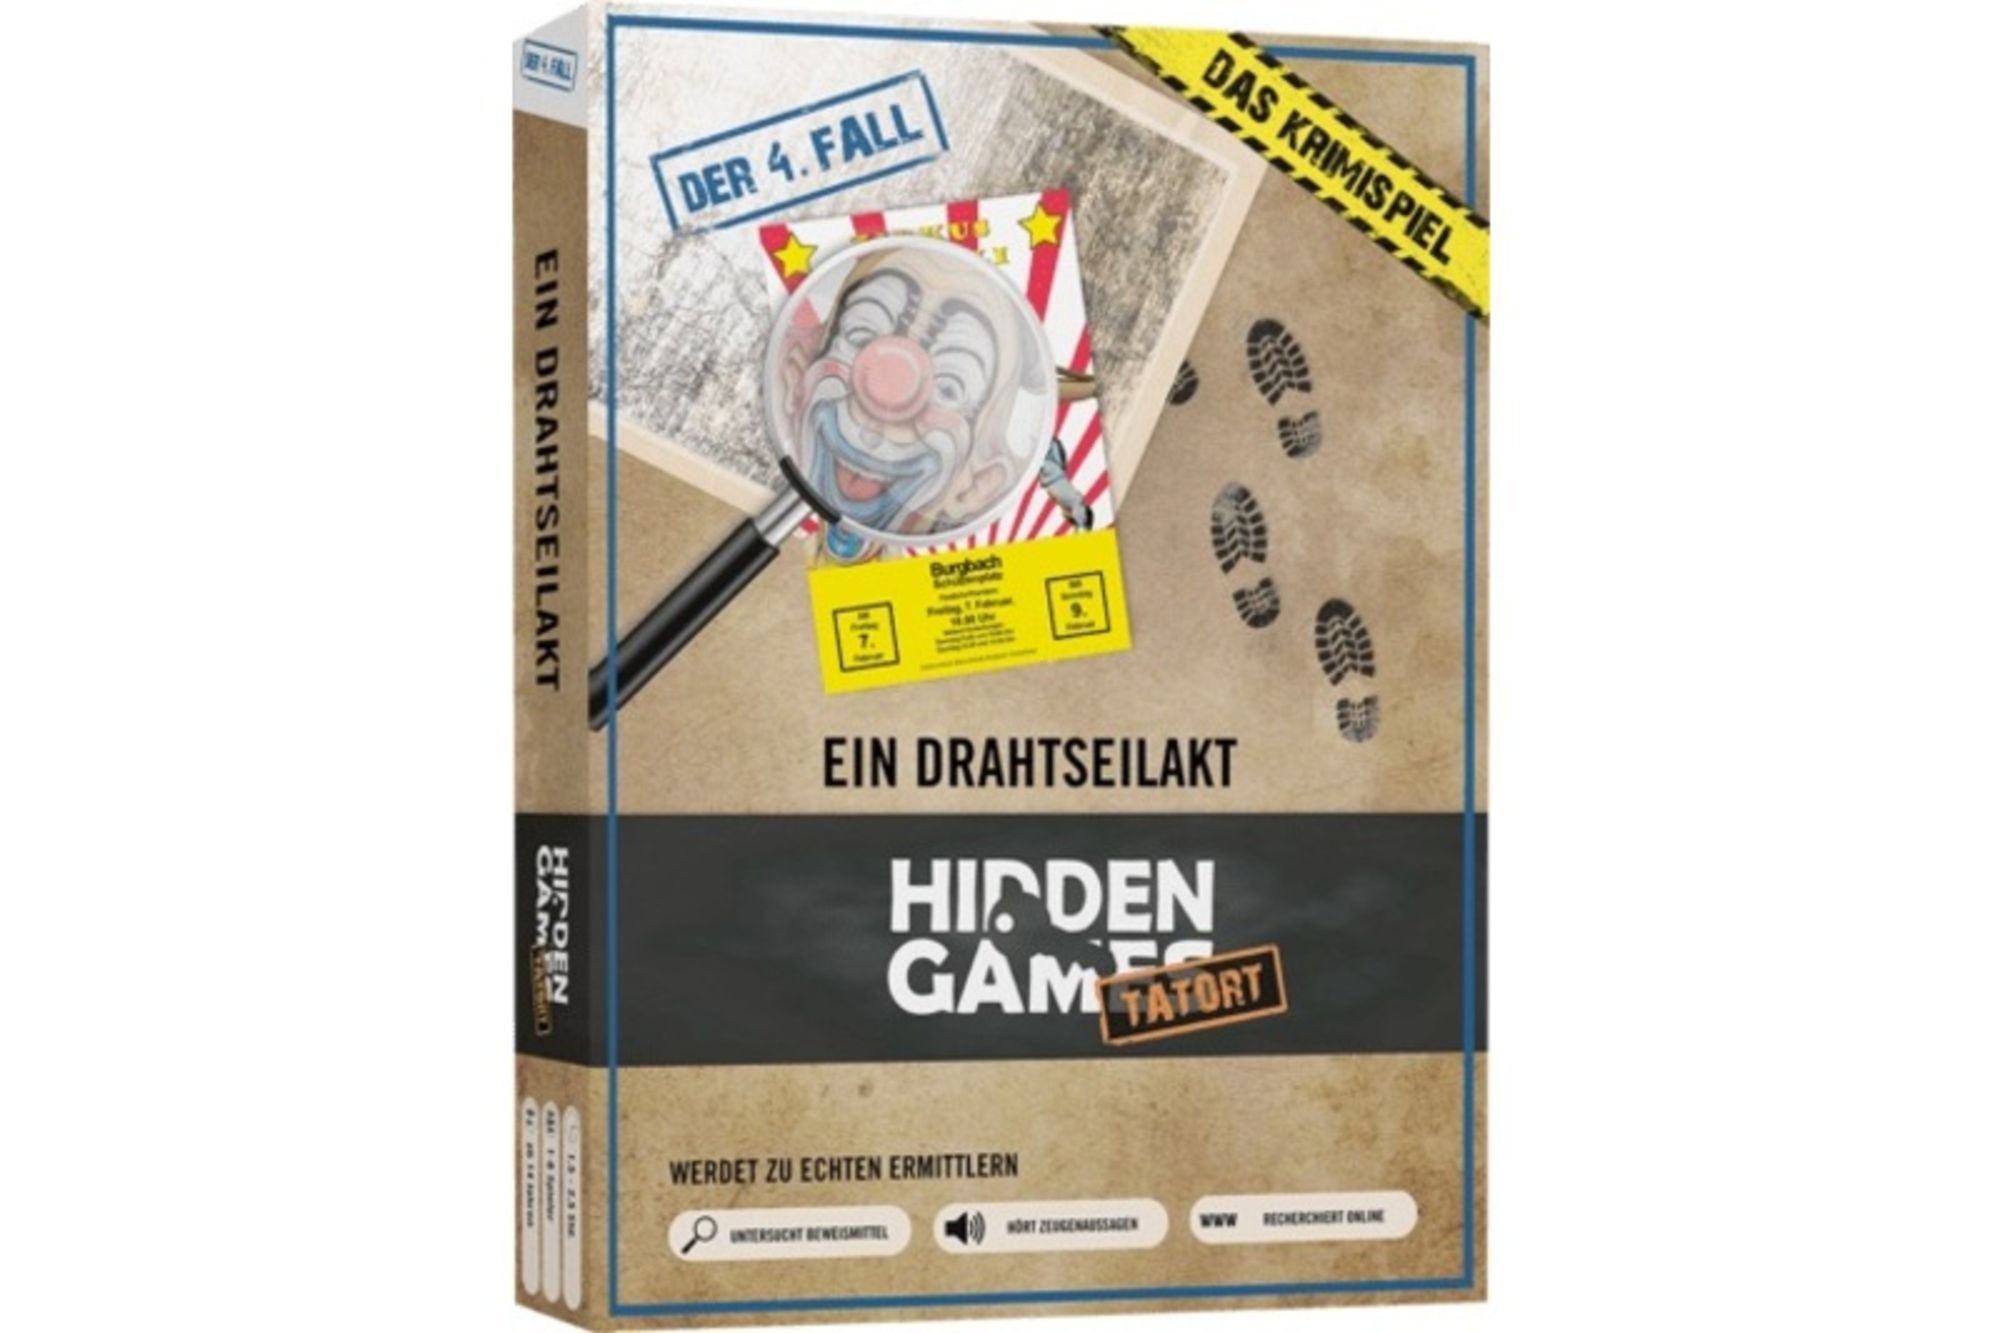 Hidden Games Tatort: Ein Drahtseilakt 4.Fall' kaufen - Spielwaren